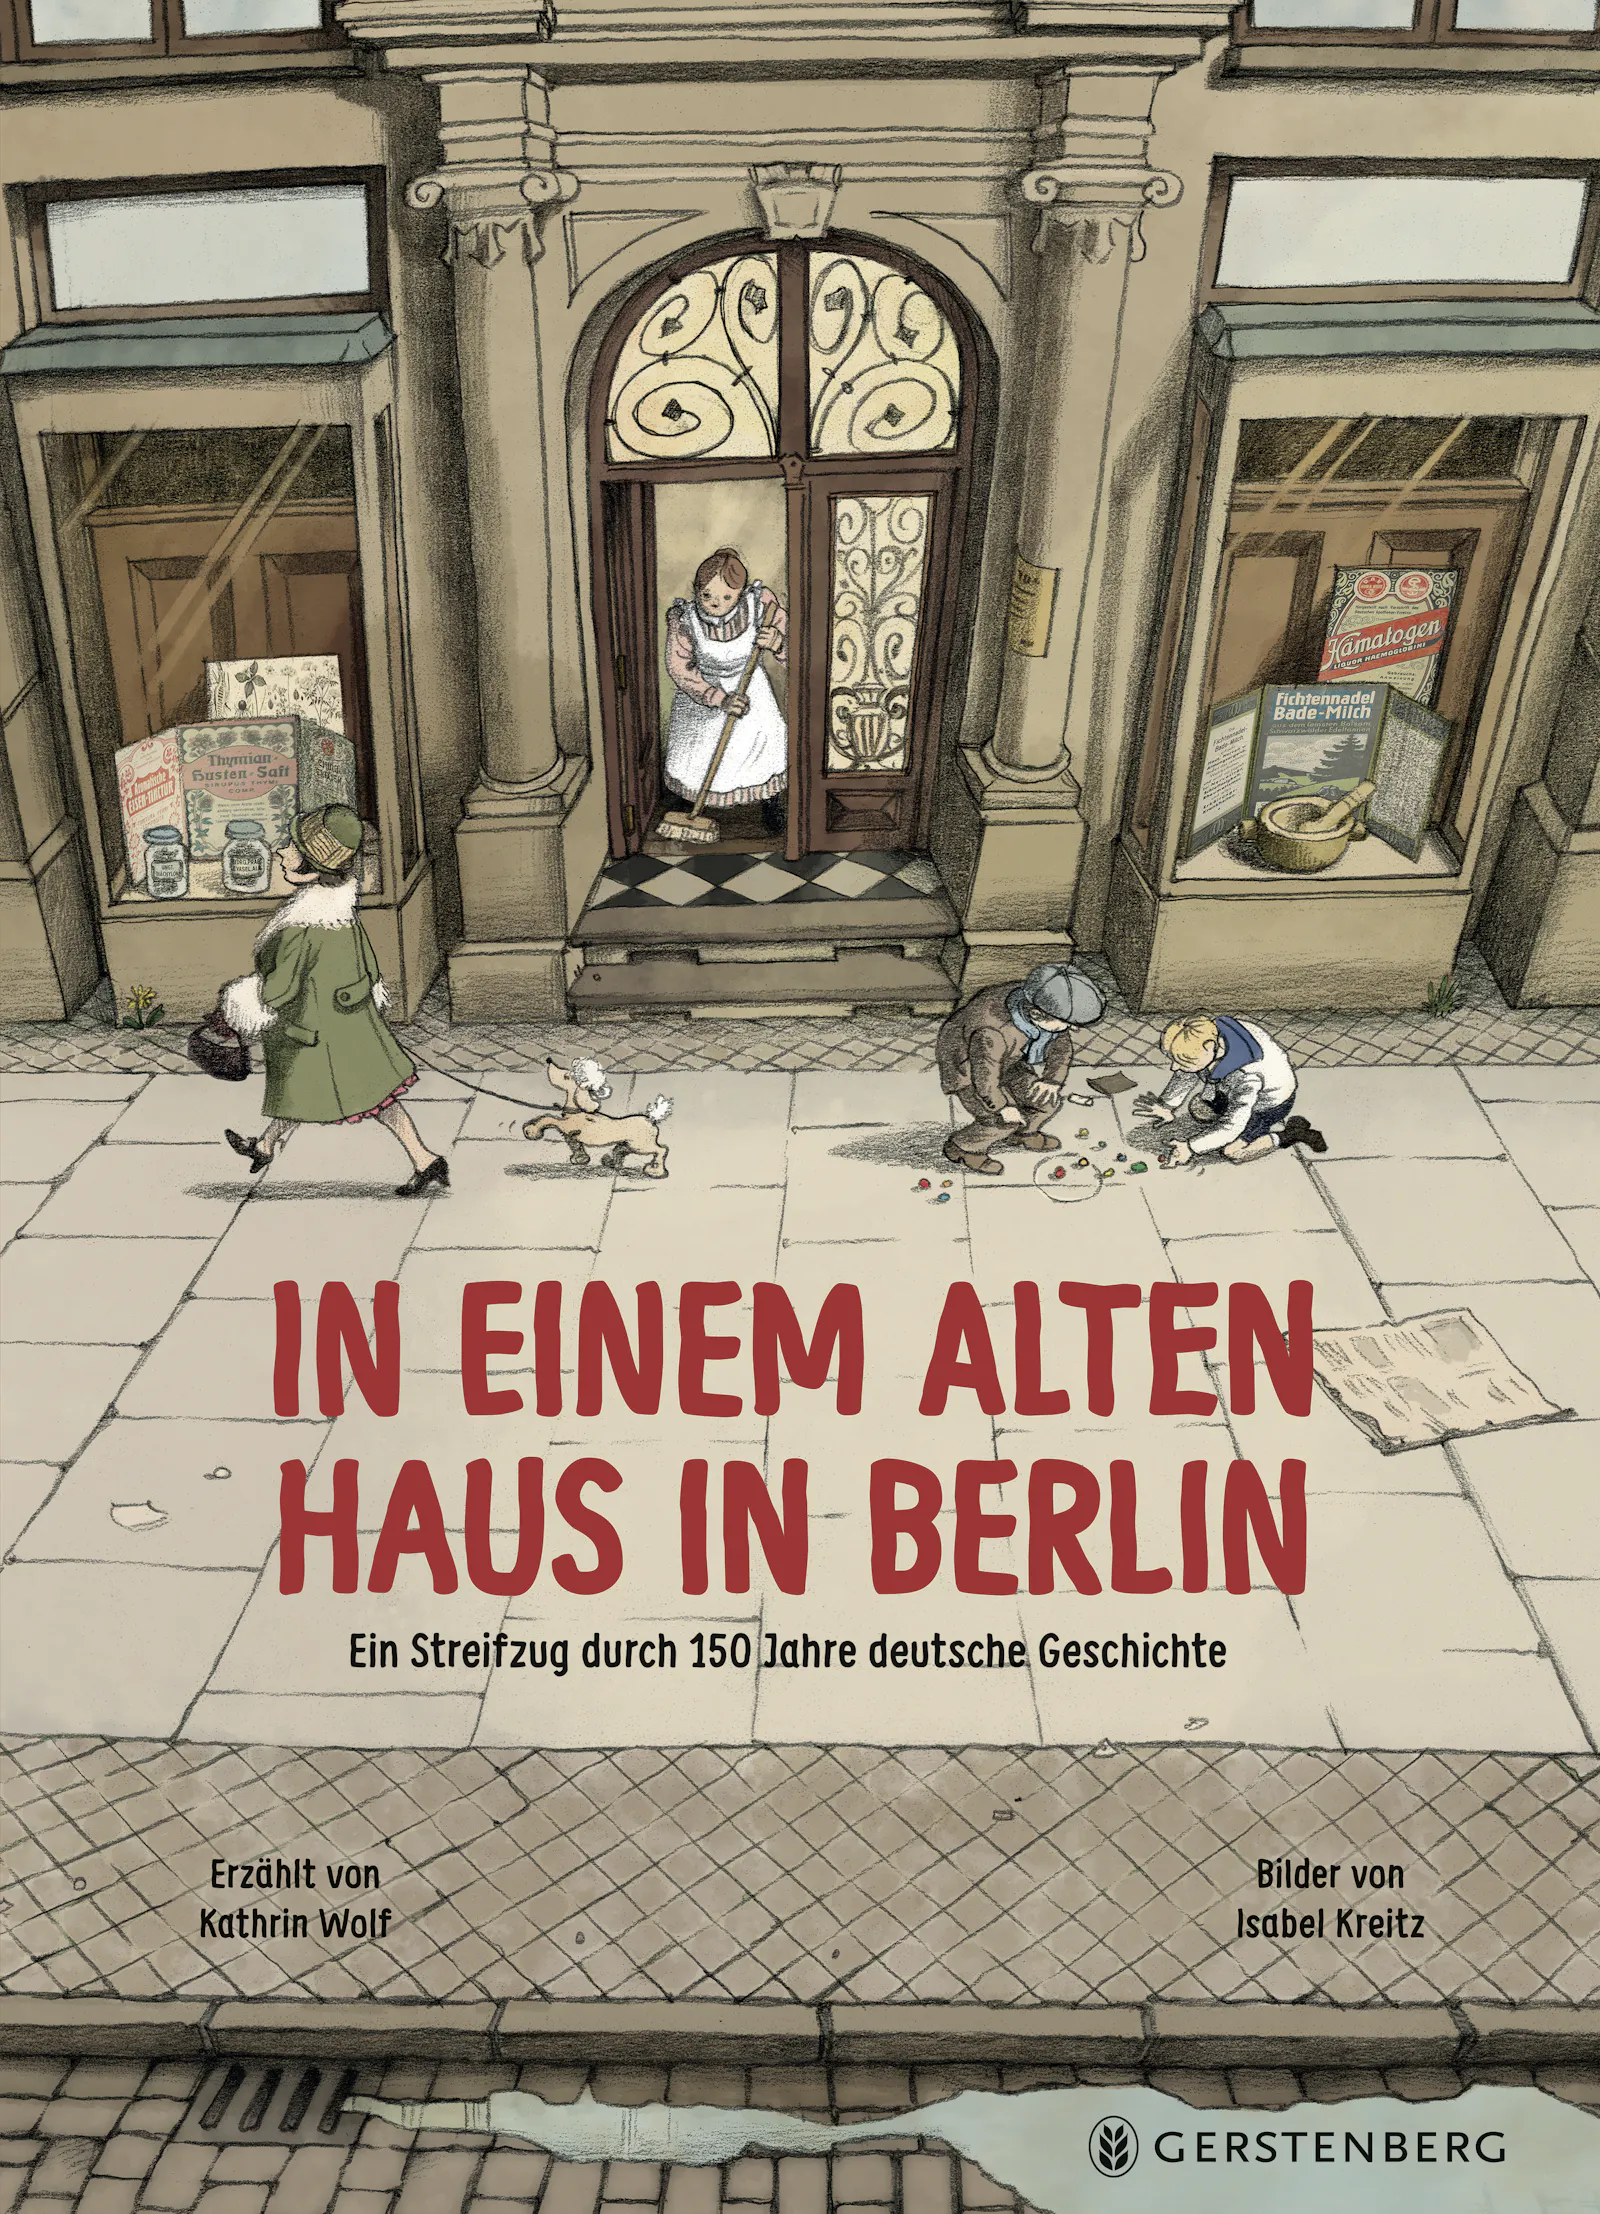 Cover von "In einem alten Haus in Berlin" von Kathrin Wolf und Isabel Kreitz aus dem Gerstenberg Verlag